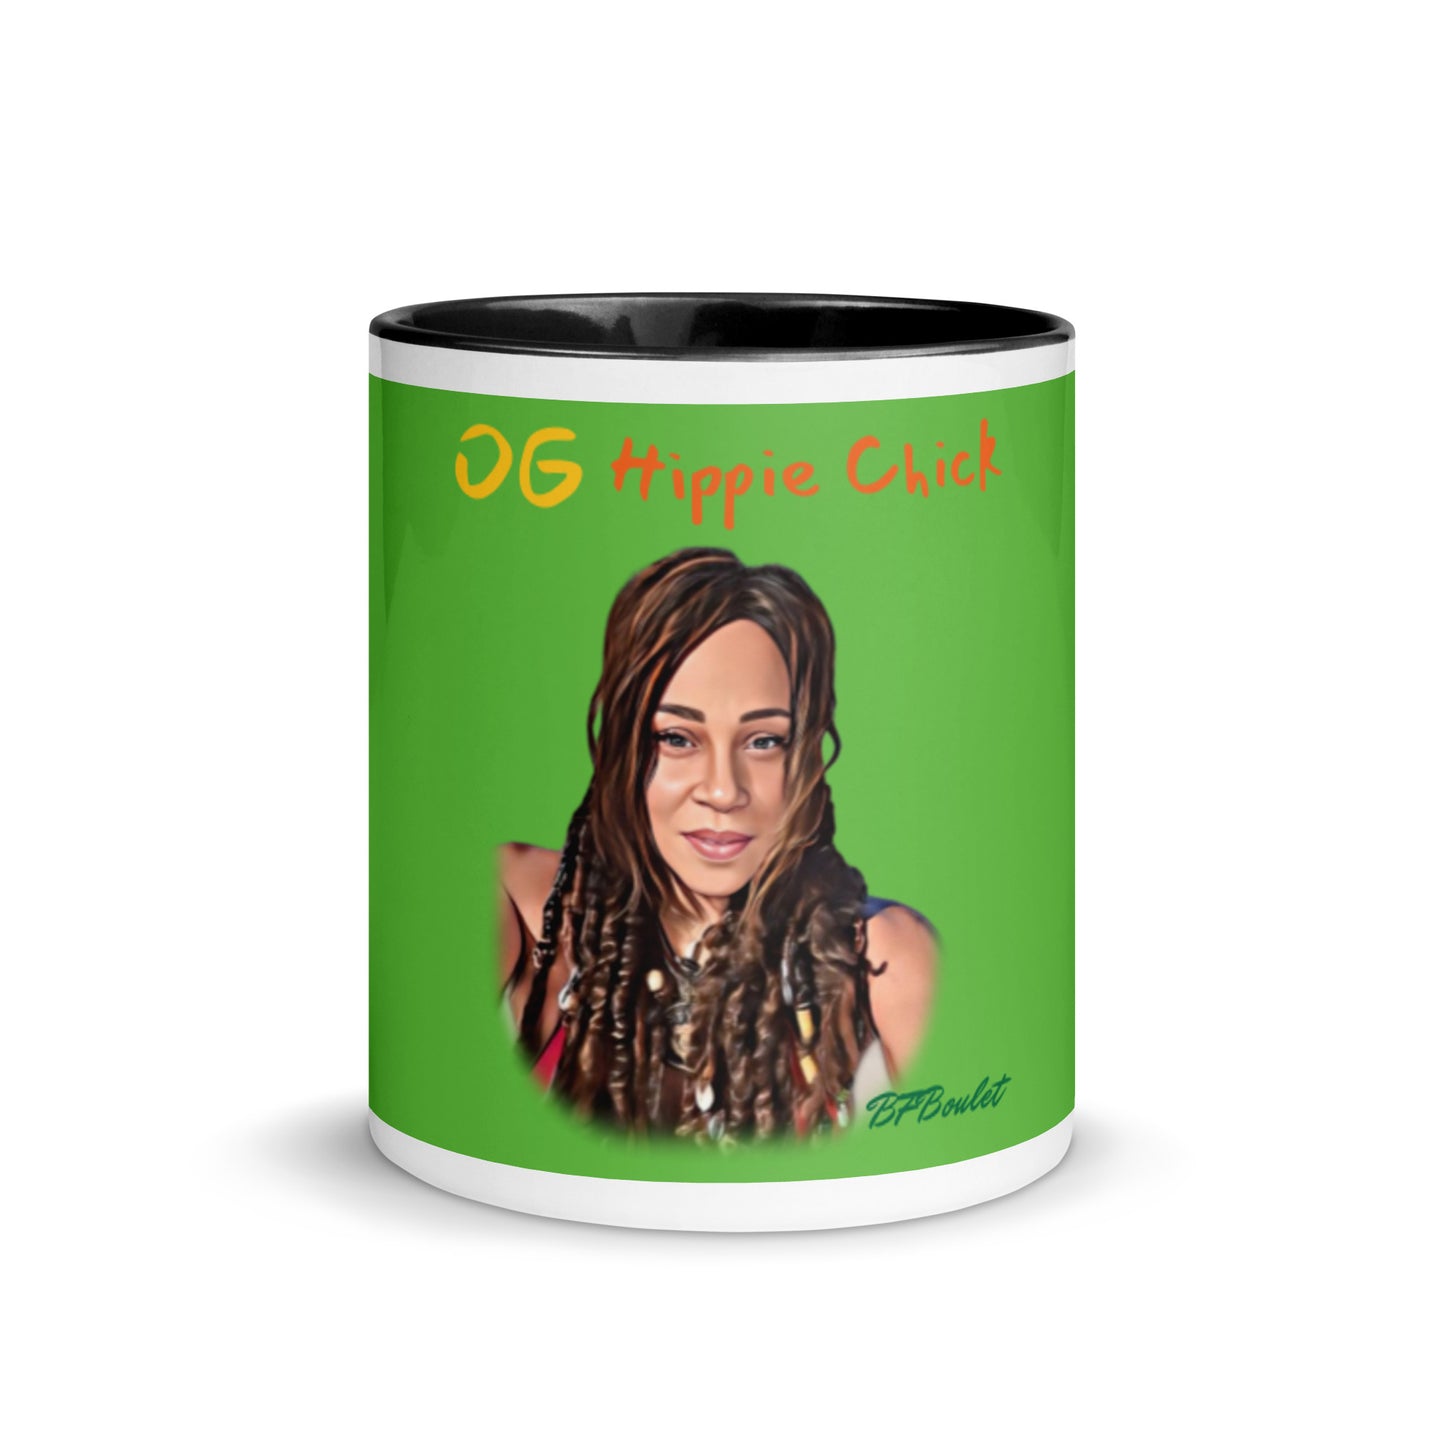 Grinch Color Mug - OG Hippie Chick (BFBoulet)